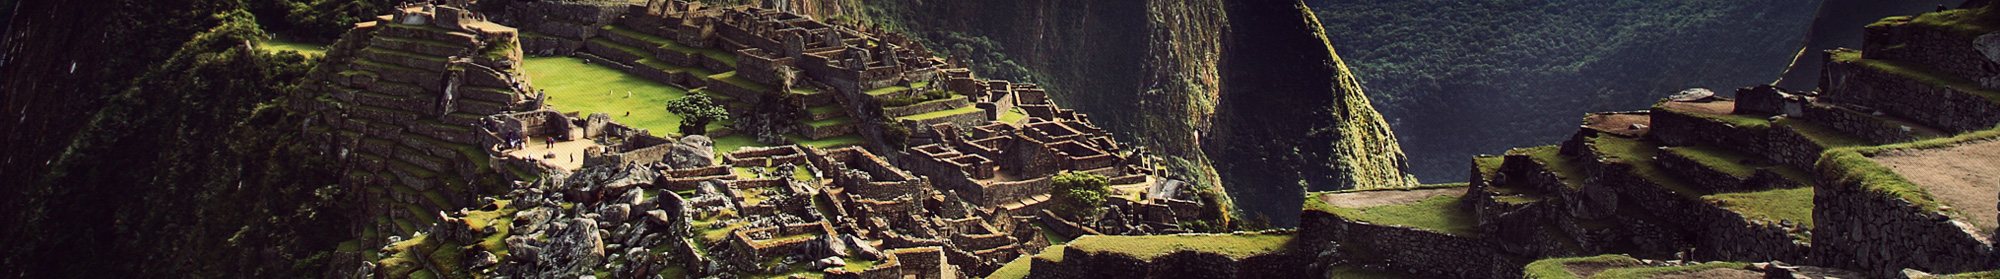 Lugares turisticos de America Latina - Seguir Viajando - machu_picchu-cusco-peru